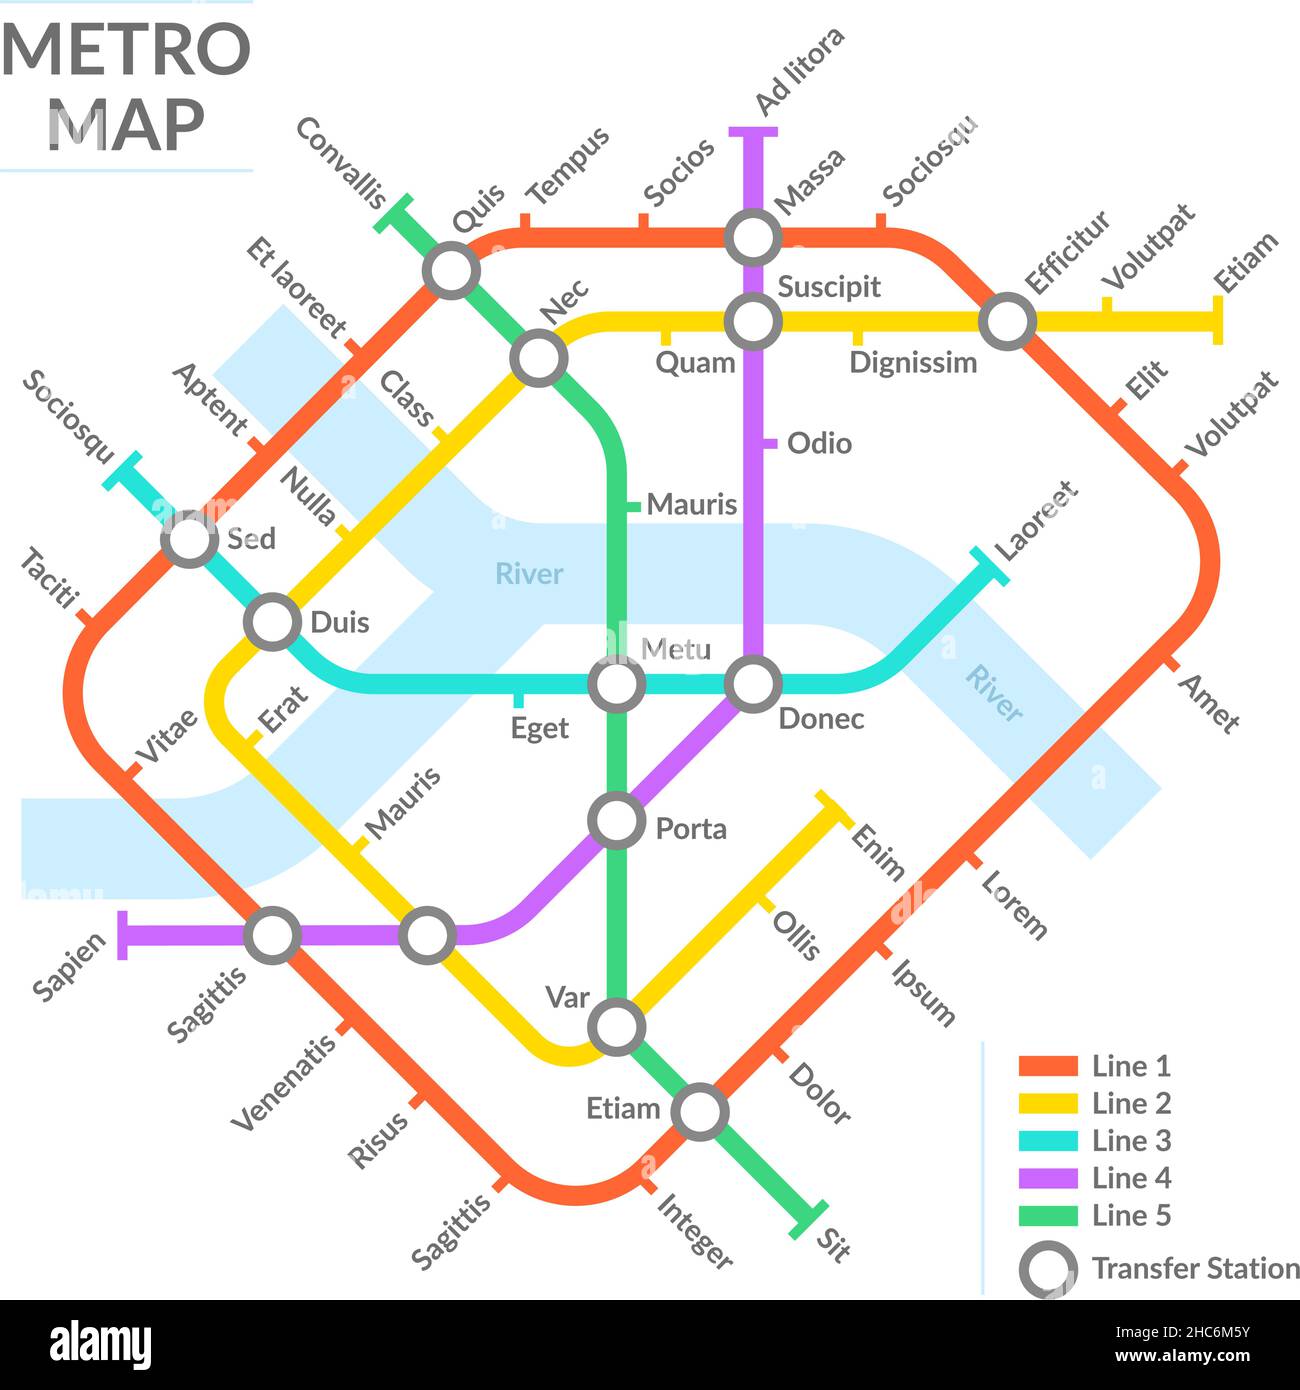 Mappa delle stazioni della metropolitana, schema dei trasporti pubblici sotterranei, rete metropolitana. Illustrazione vettoriale della mappa metropolitana urbana della città sotterranea. Metropolitana pubblico Illustrazione Vettoriale